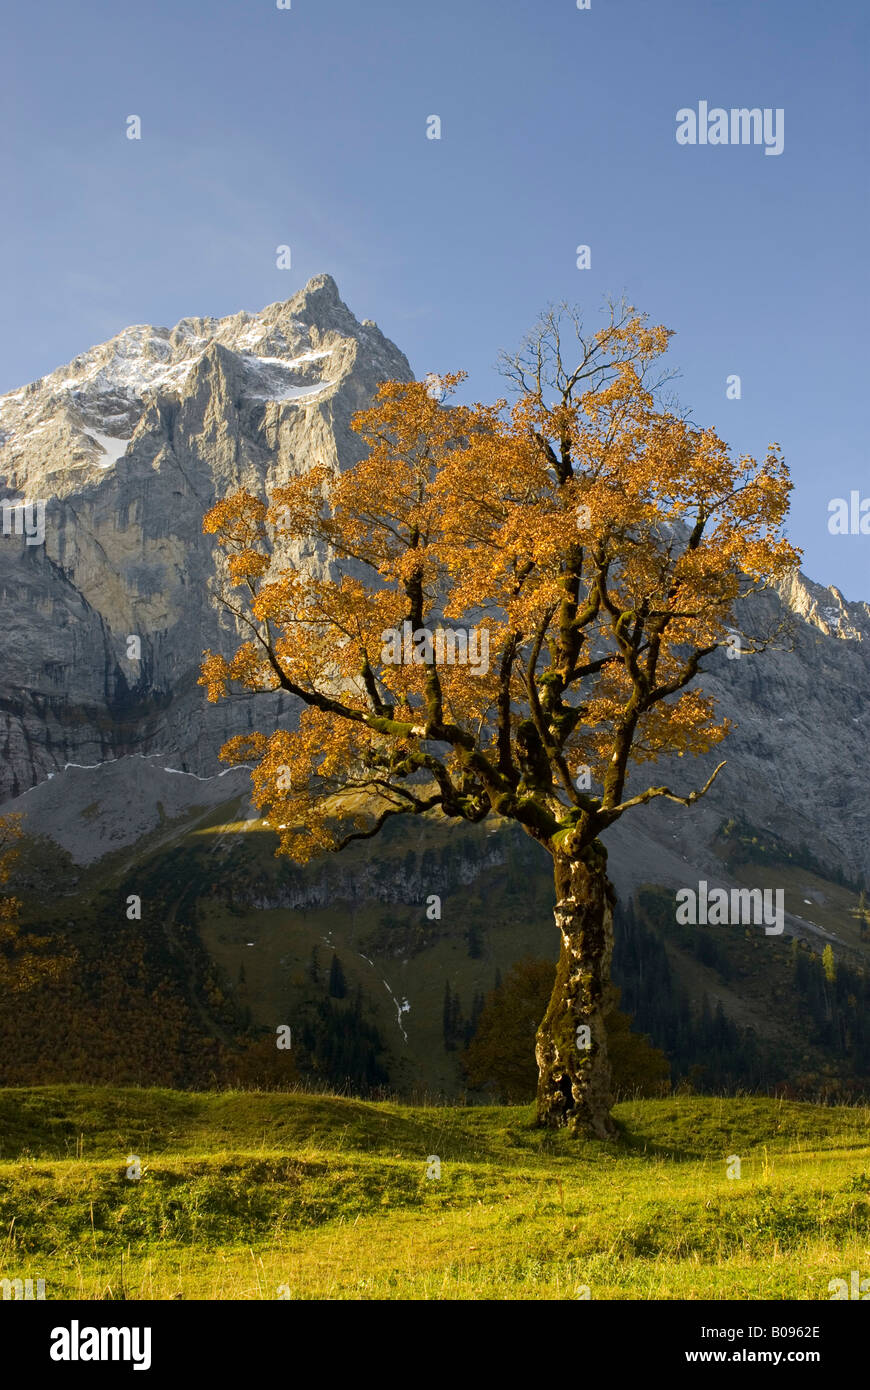 Sycamore Maple (Acer pseudoplatanus) tree, Grosser Ahornboden, Karwendel Range, Tirol, Austria Stock Photo